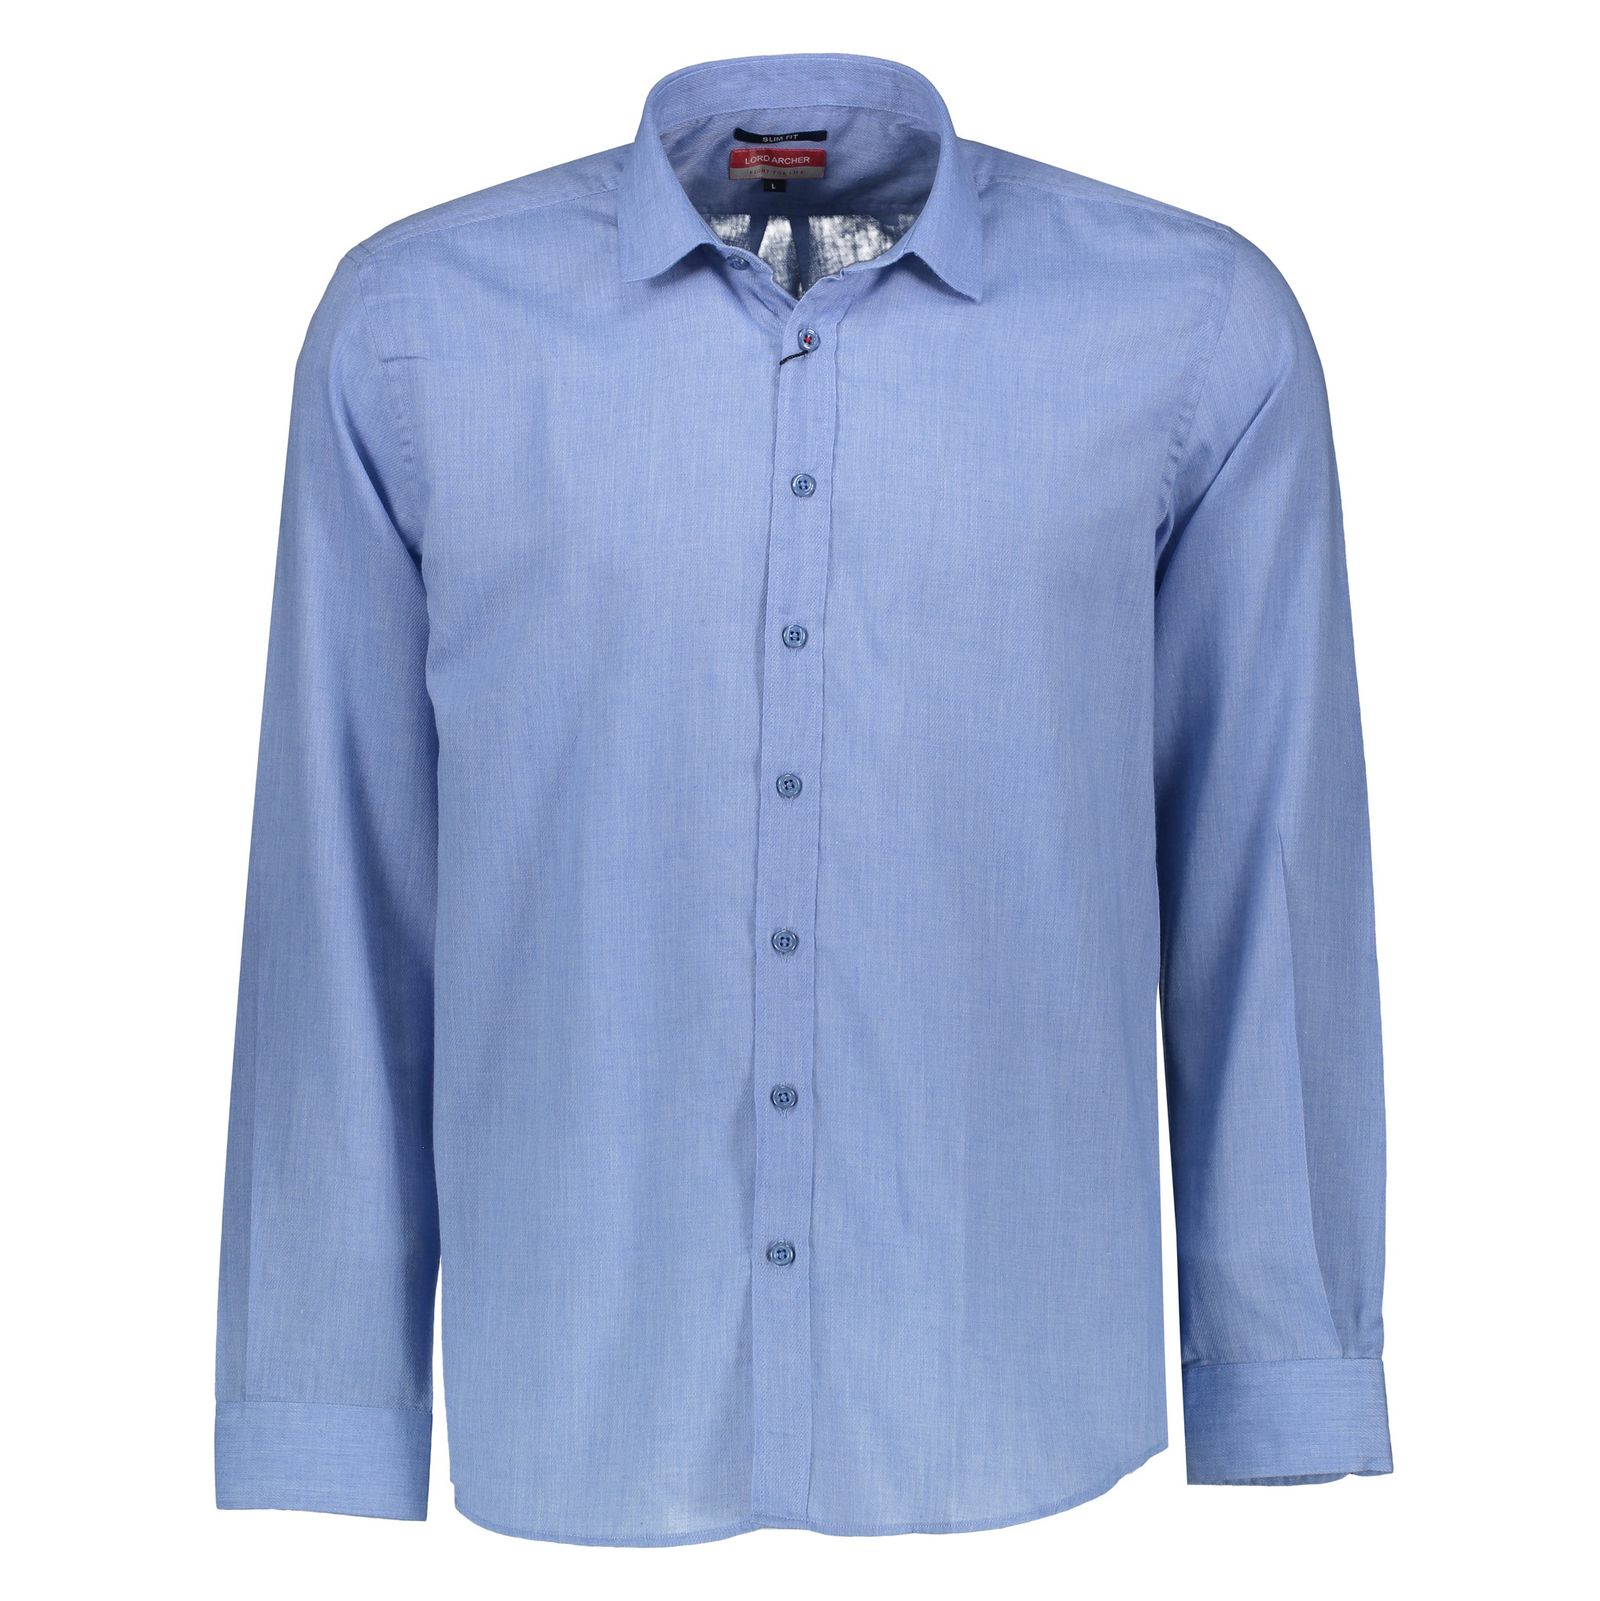 پیراهن مردانه لرد آرچر مدل 200114657 - آبی - 5